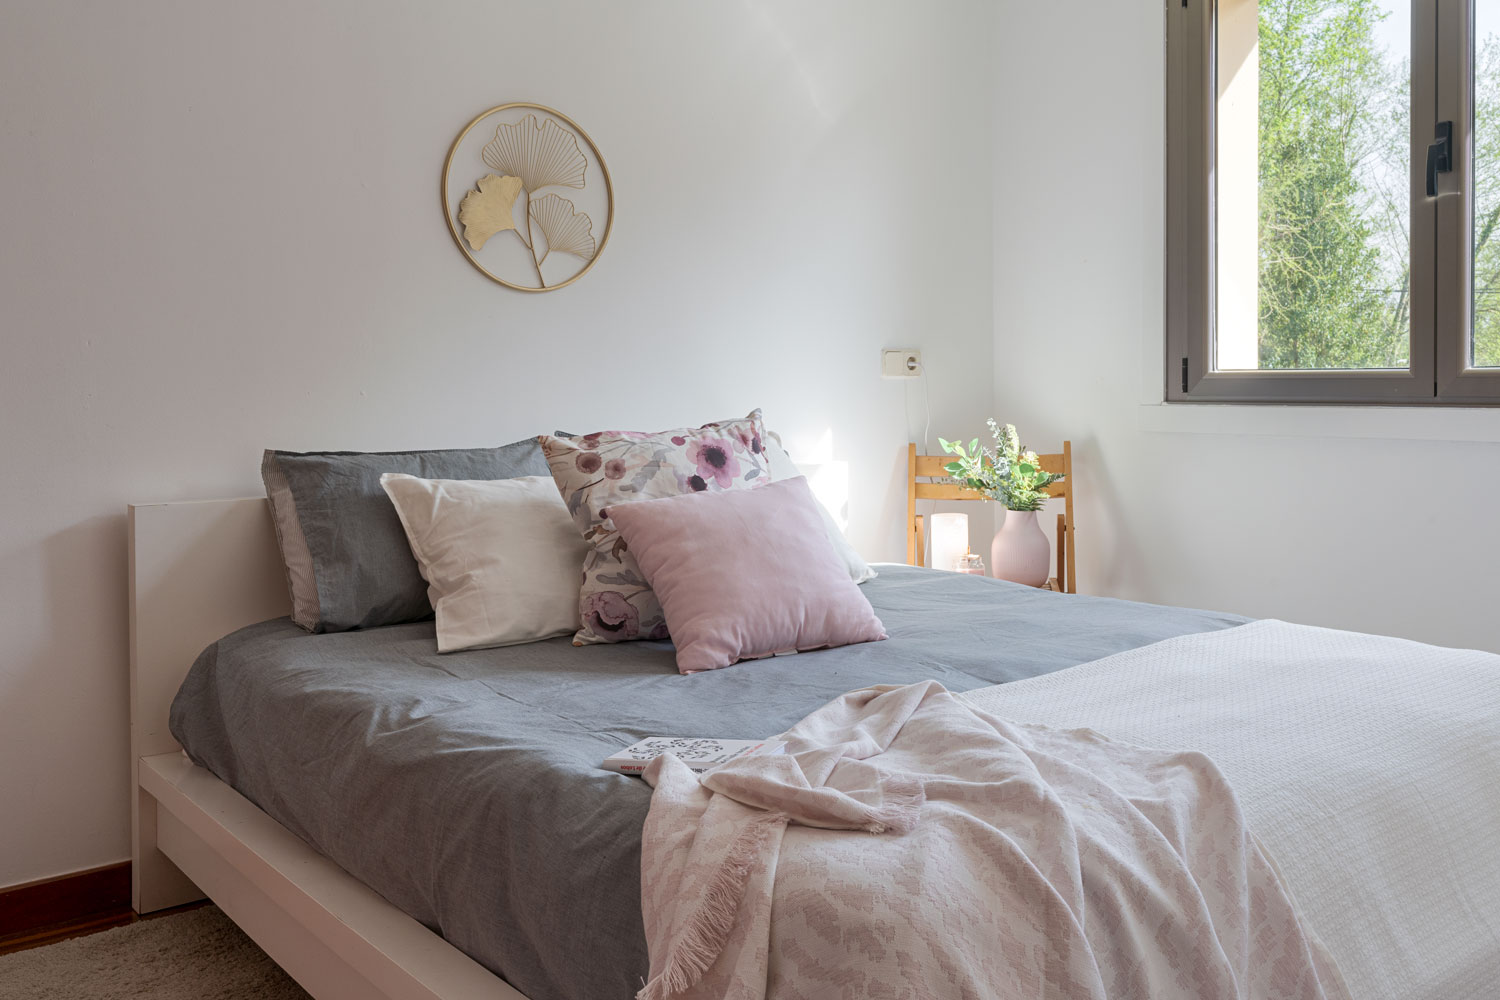 Habitación serena con cama amplia, ropa de cama en tonos grises y rosas, y decoración natural, ofreciendo un refugio tranquilo con vista al exterior